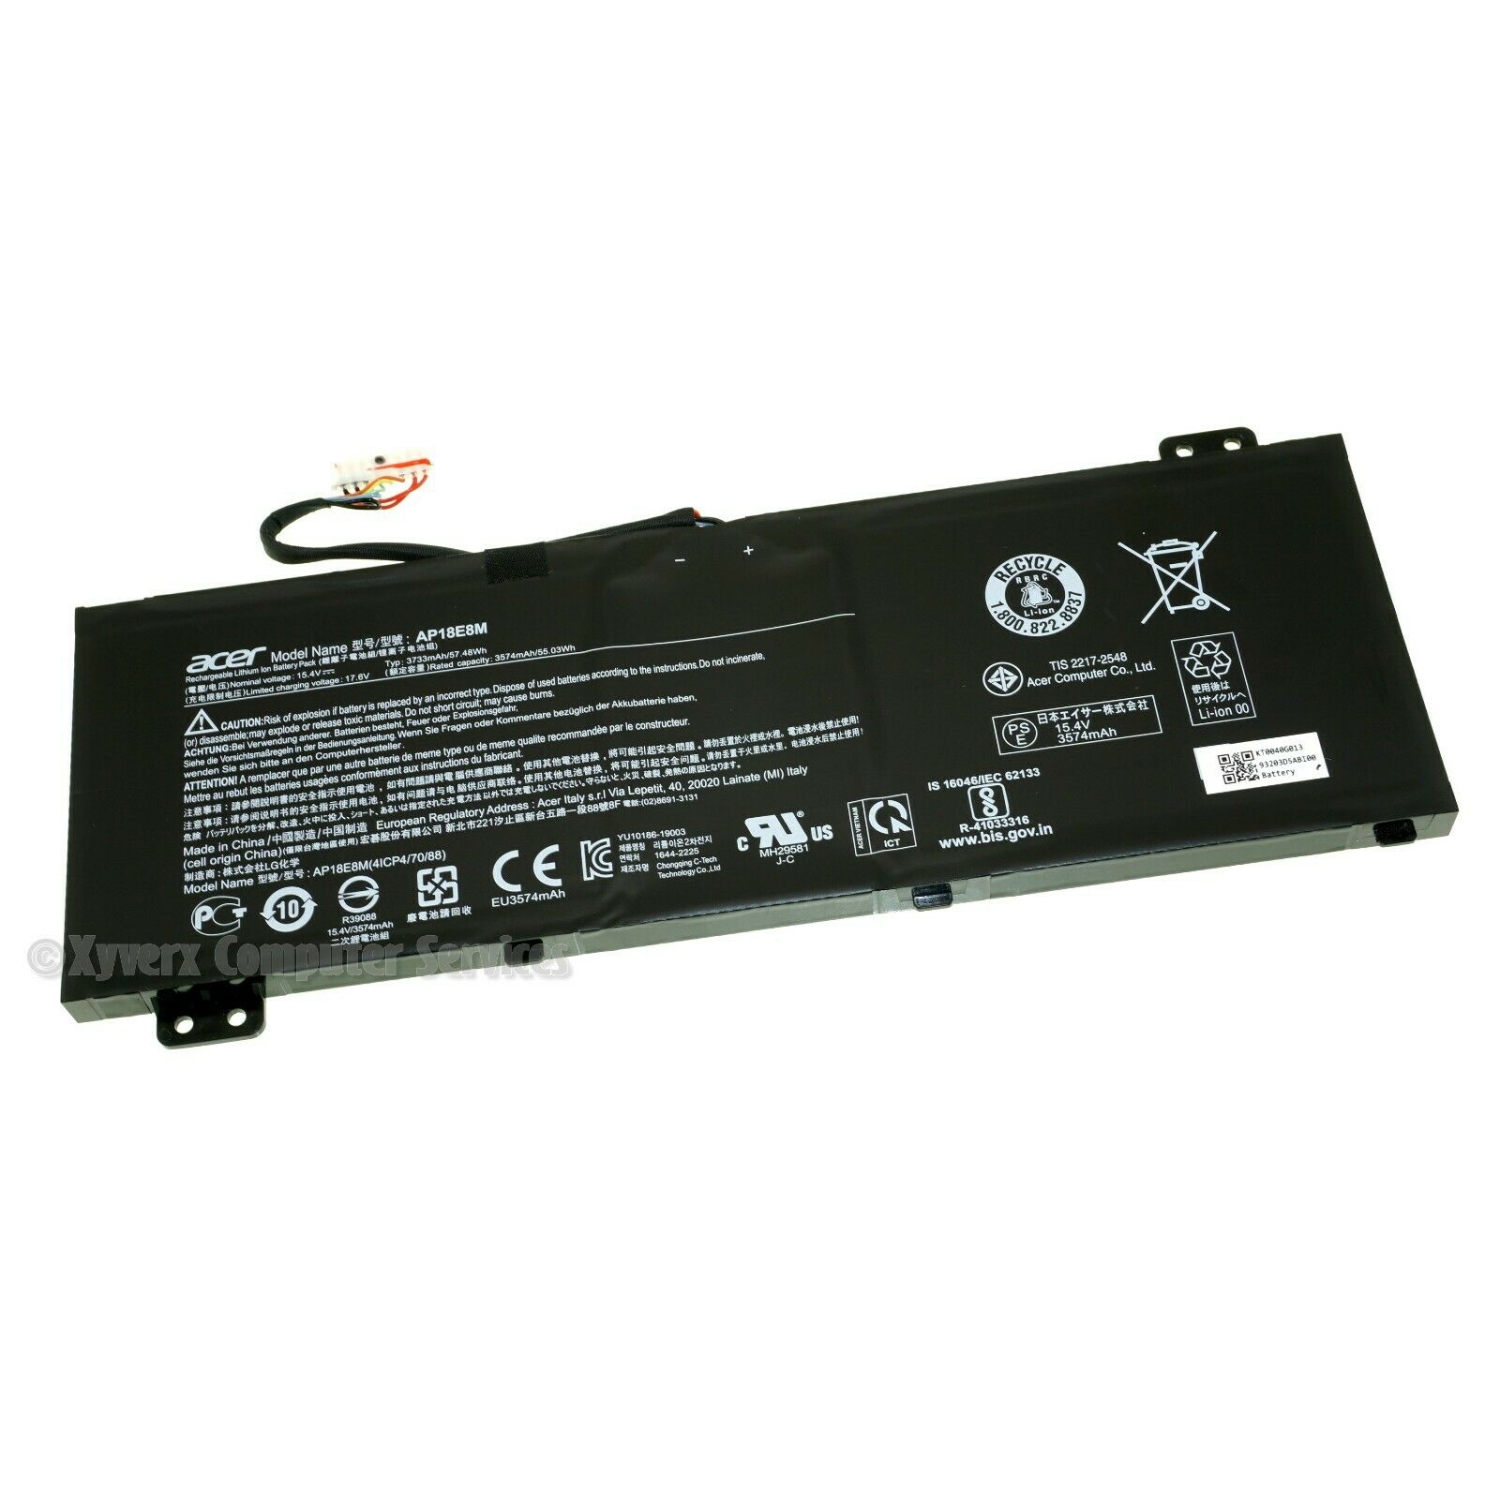 Genuine AP18E8M 57.48Wh 3733mAh Laptop Battery Replacement for Aspire 7 A715-74G AN517-51 Aspire Nitro 5 AN517-51 AN515-54 Nitro 7 AN715-51 Predator Helios 300 Series AP18E7M KT.00407.009 15.4V